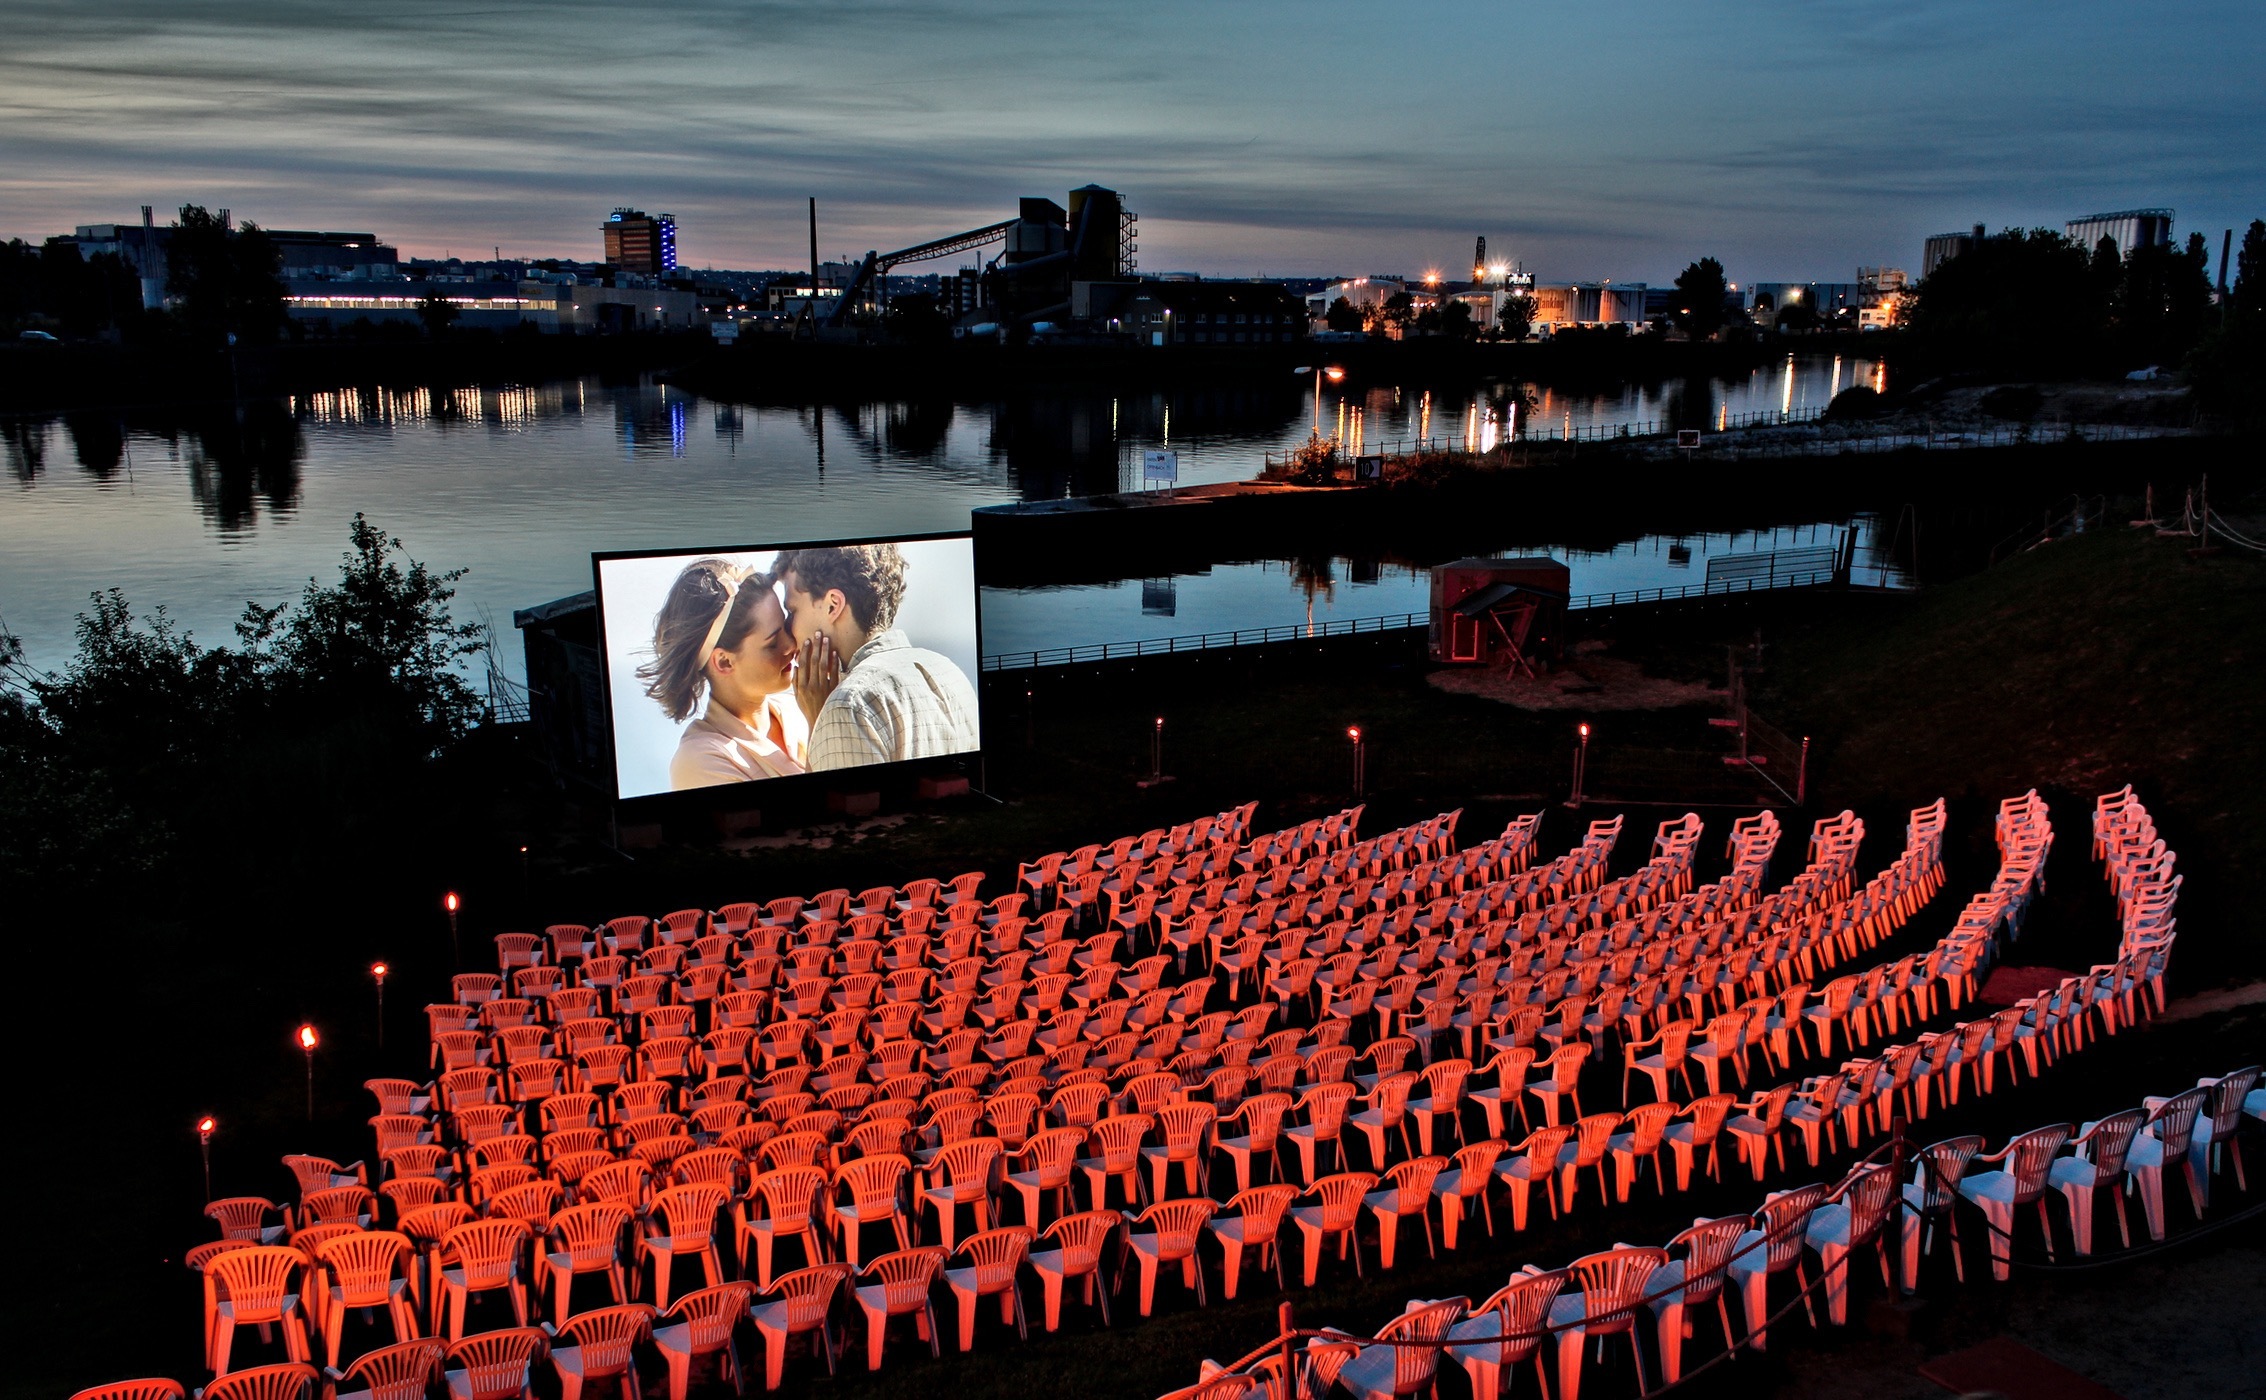 Hafen 2 im Sommer: Open-Air-Kino mit Blick auf den Main , Credit: © süsswasser e.V.